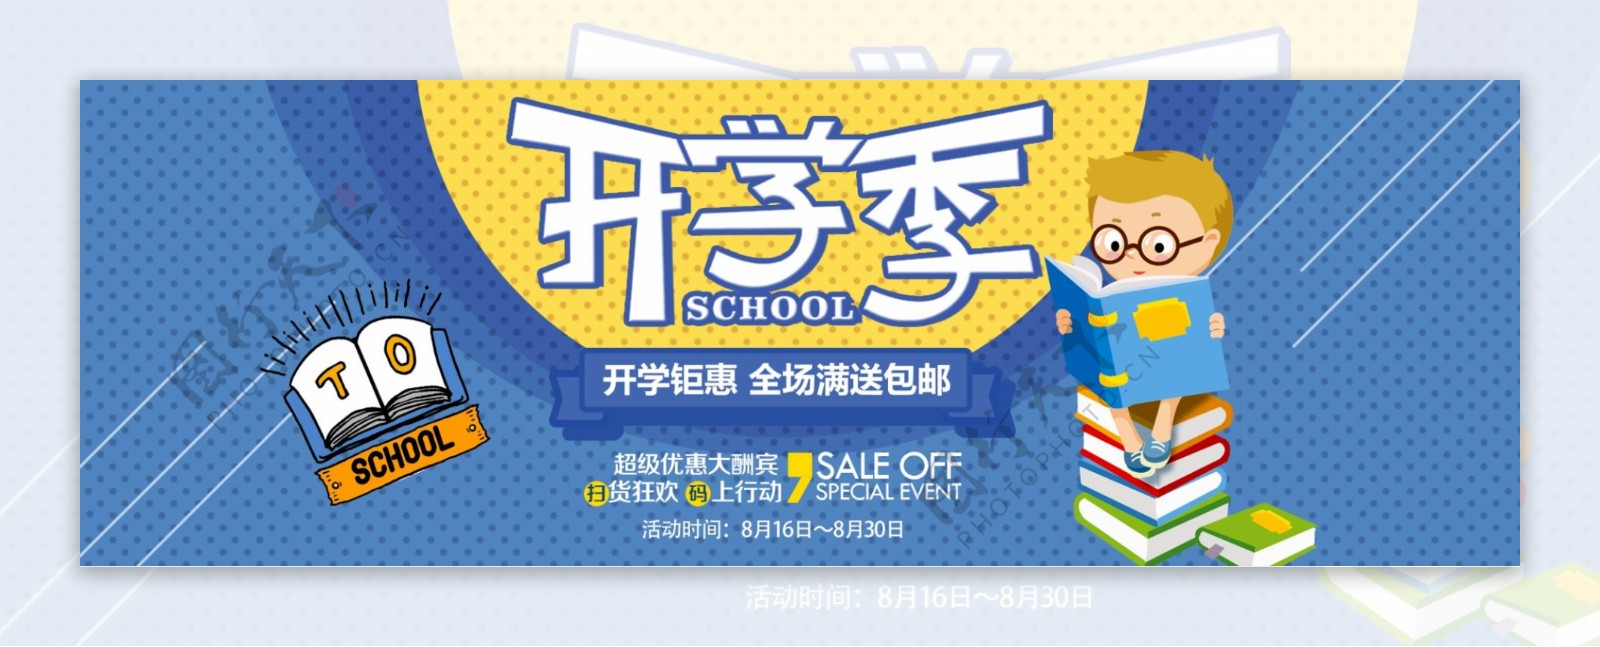 电商淘宝天猫开学季促销海报banner海报设计模板